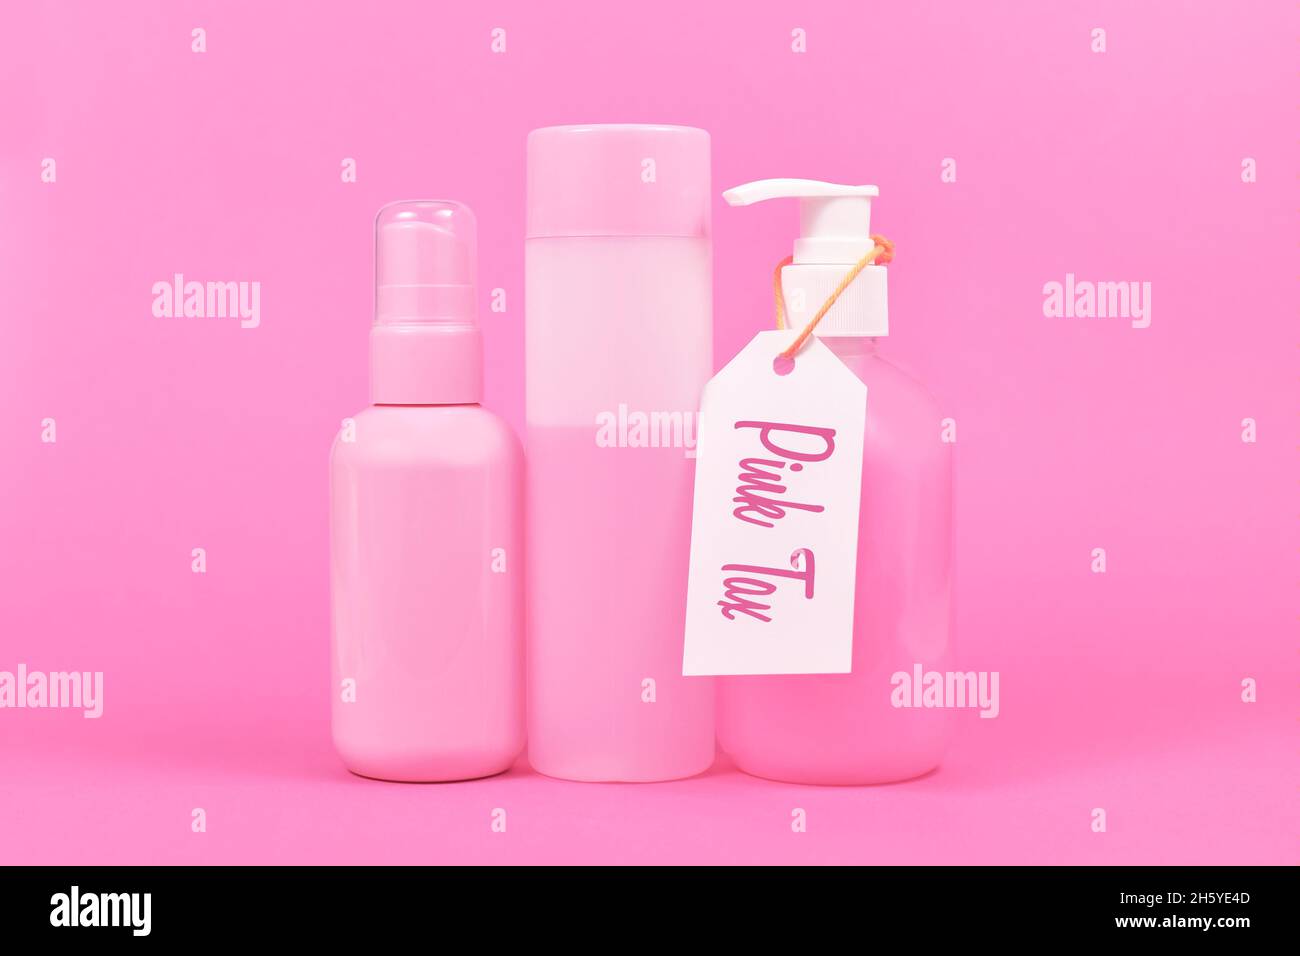 Concept de taxe rose avec divers produits d'hygiène de couleur rose stéréotype commercialisés aux femmes Banque D'Images